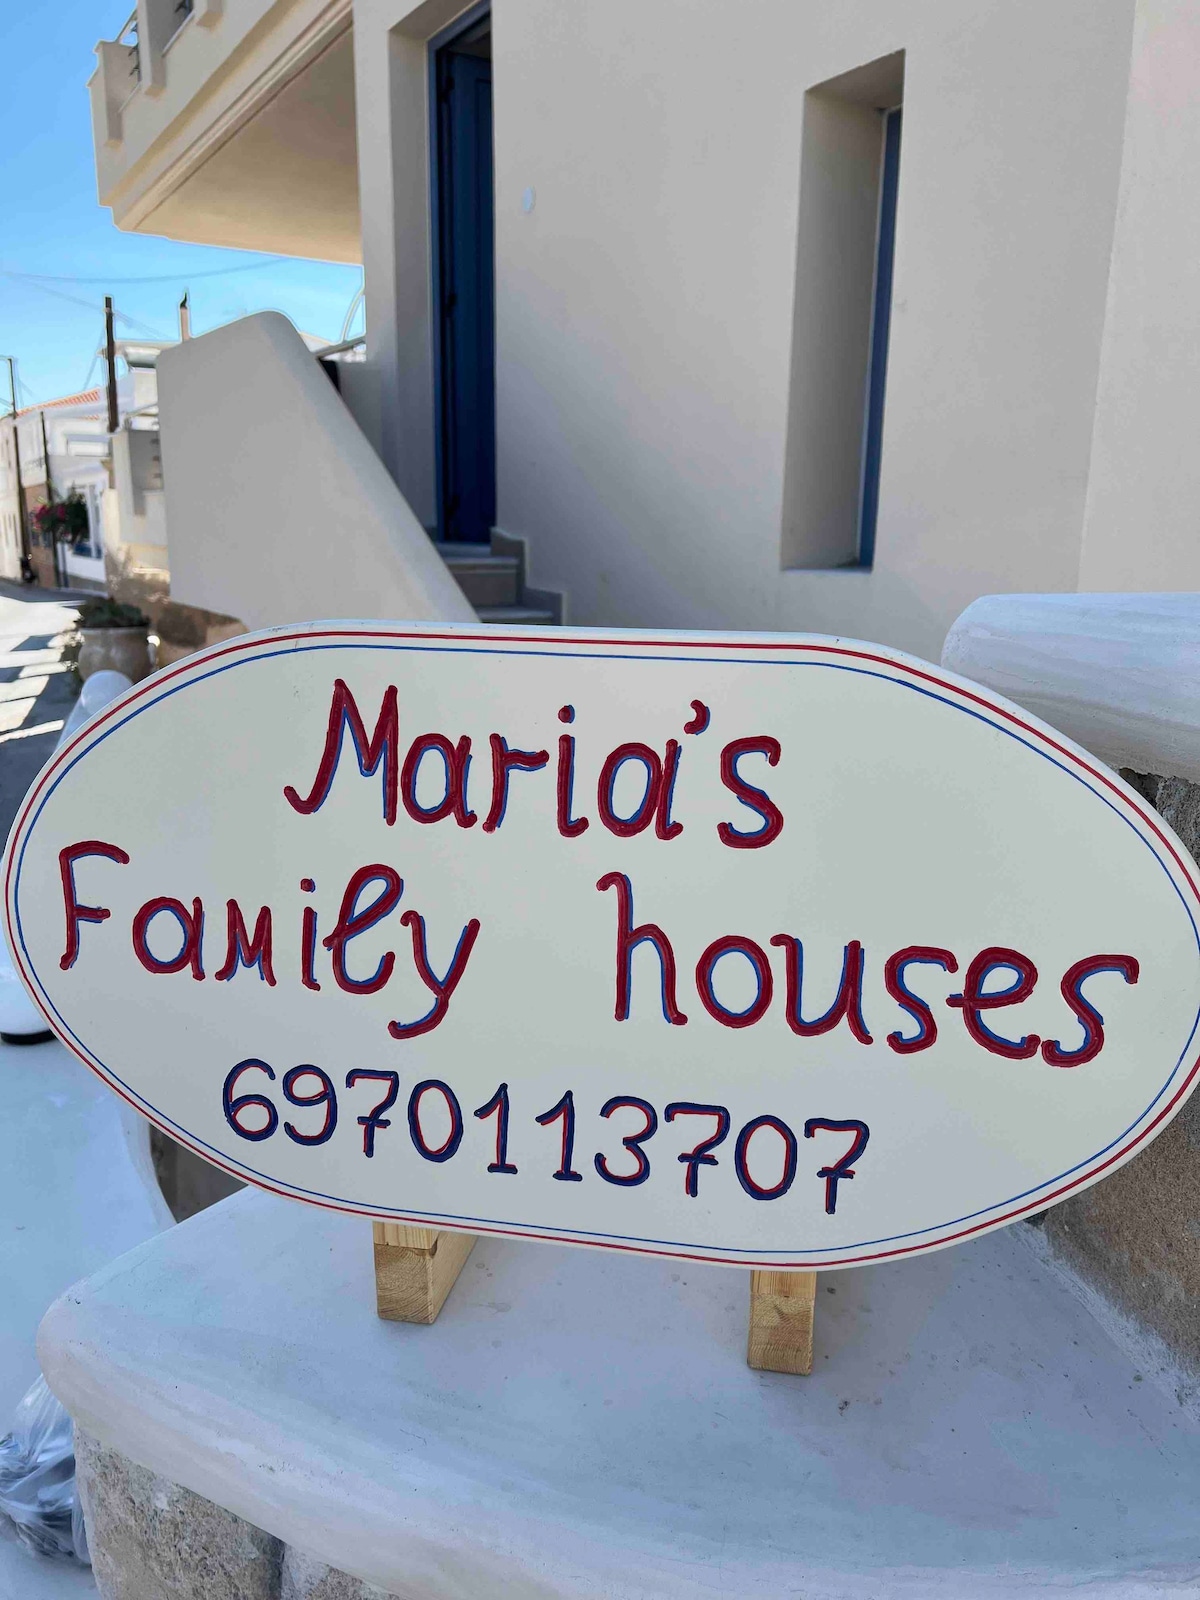 Maria’s family house’s